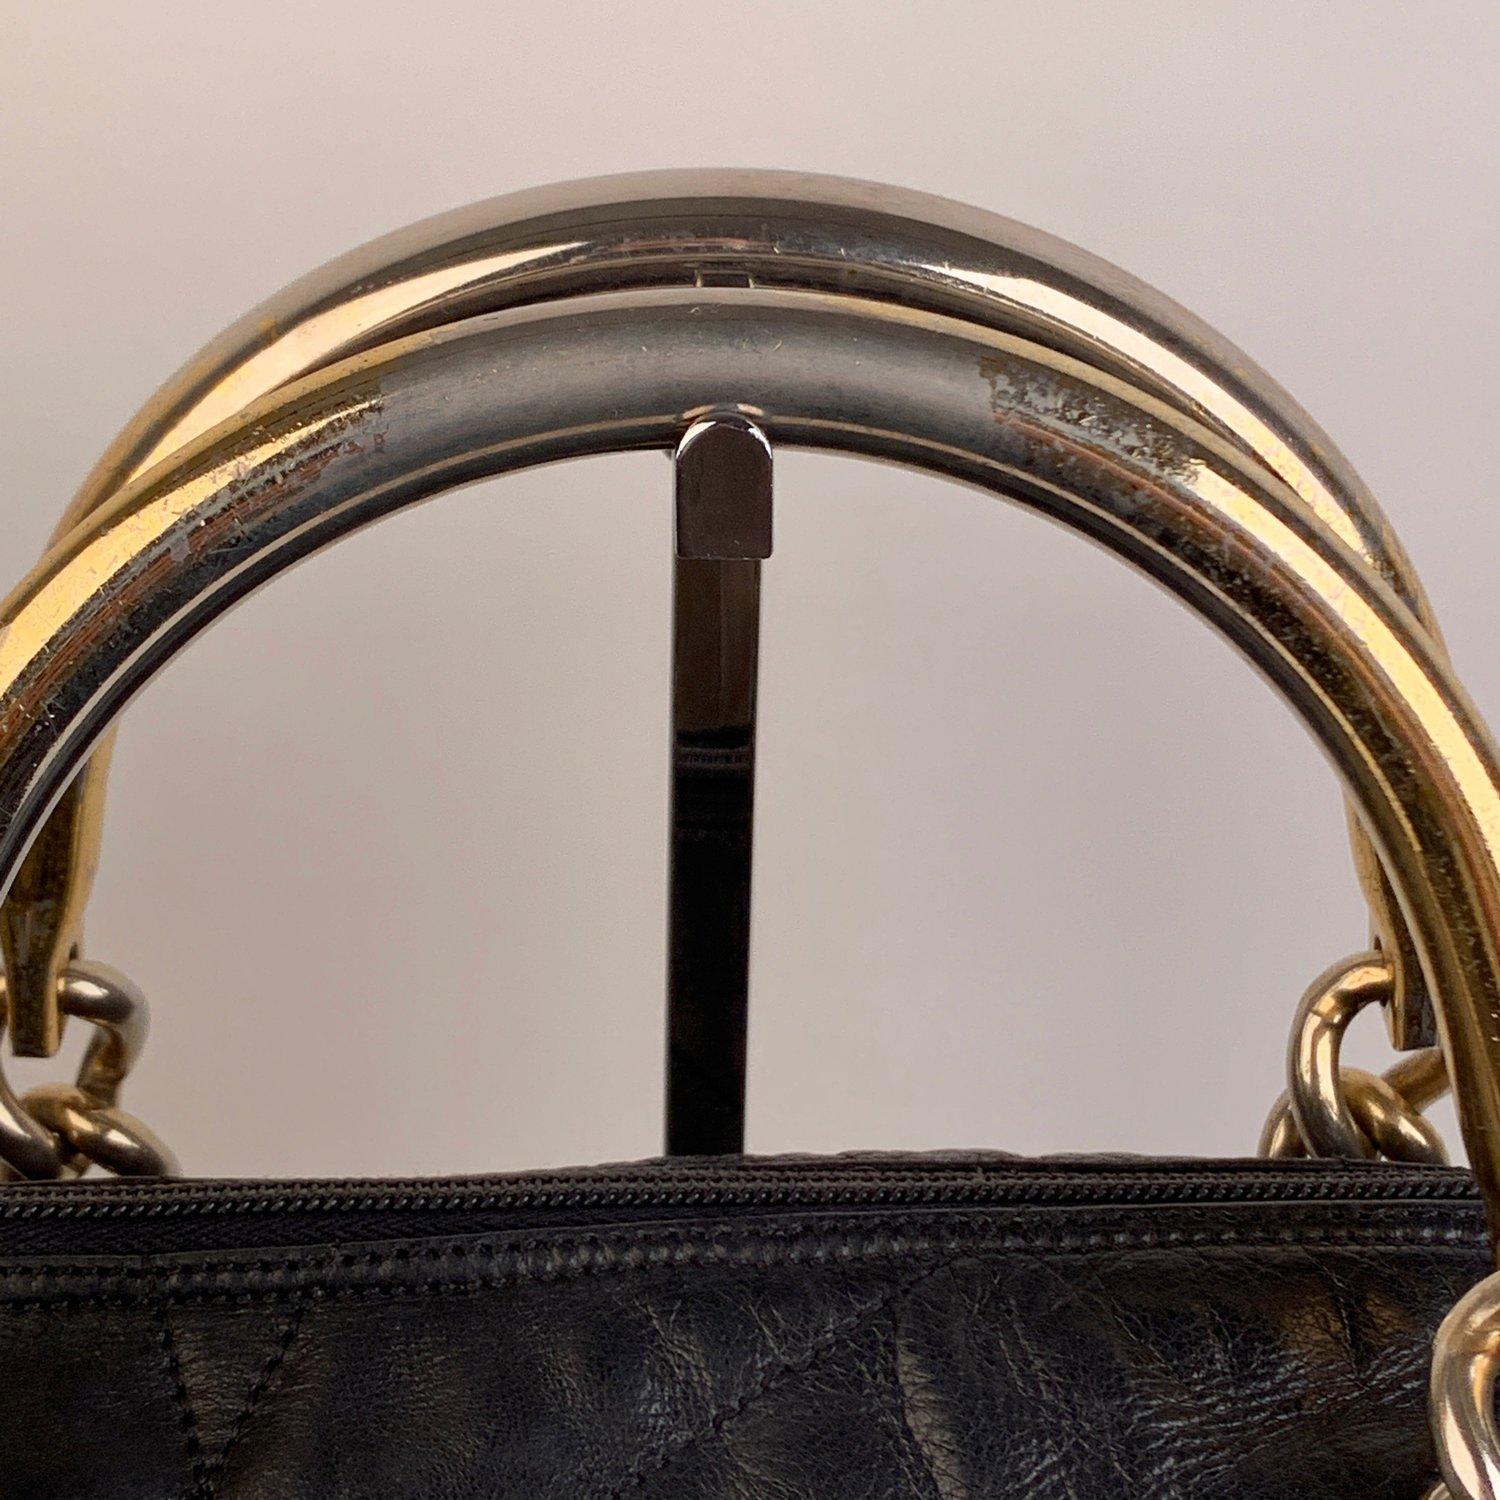 handbag with metal handle